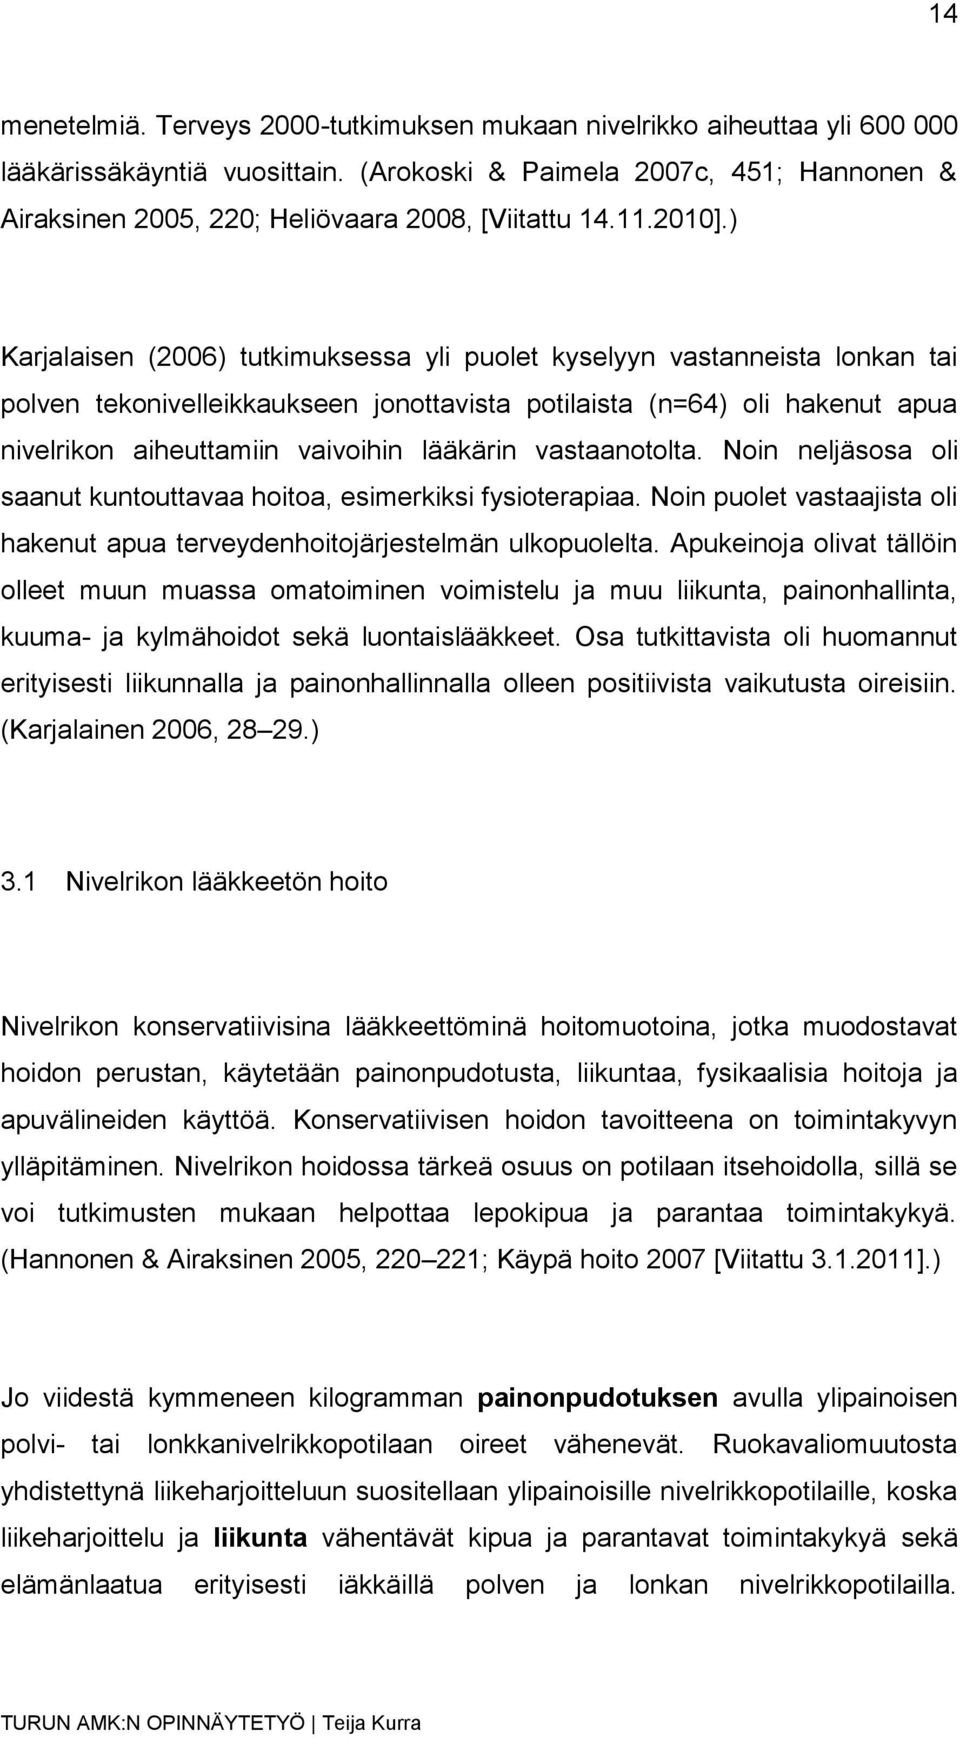 ) Karjalaisen (2006) tutkimuksessa yli puolet kyselyyn vastanneista lonkan tai polven tekonivelleikkaukseen jonottavista potilaista (n=64) oli hakenut apua nivelrikon aiheuttamiin vaivoihin lääkärin